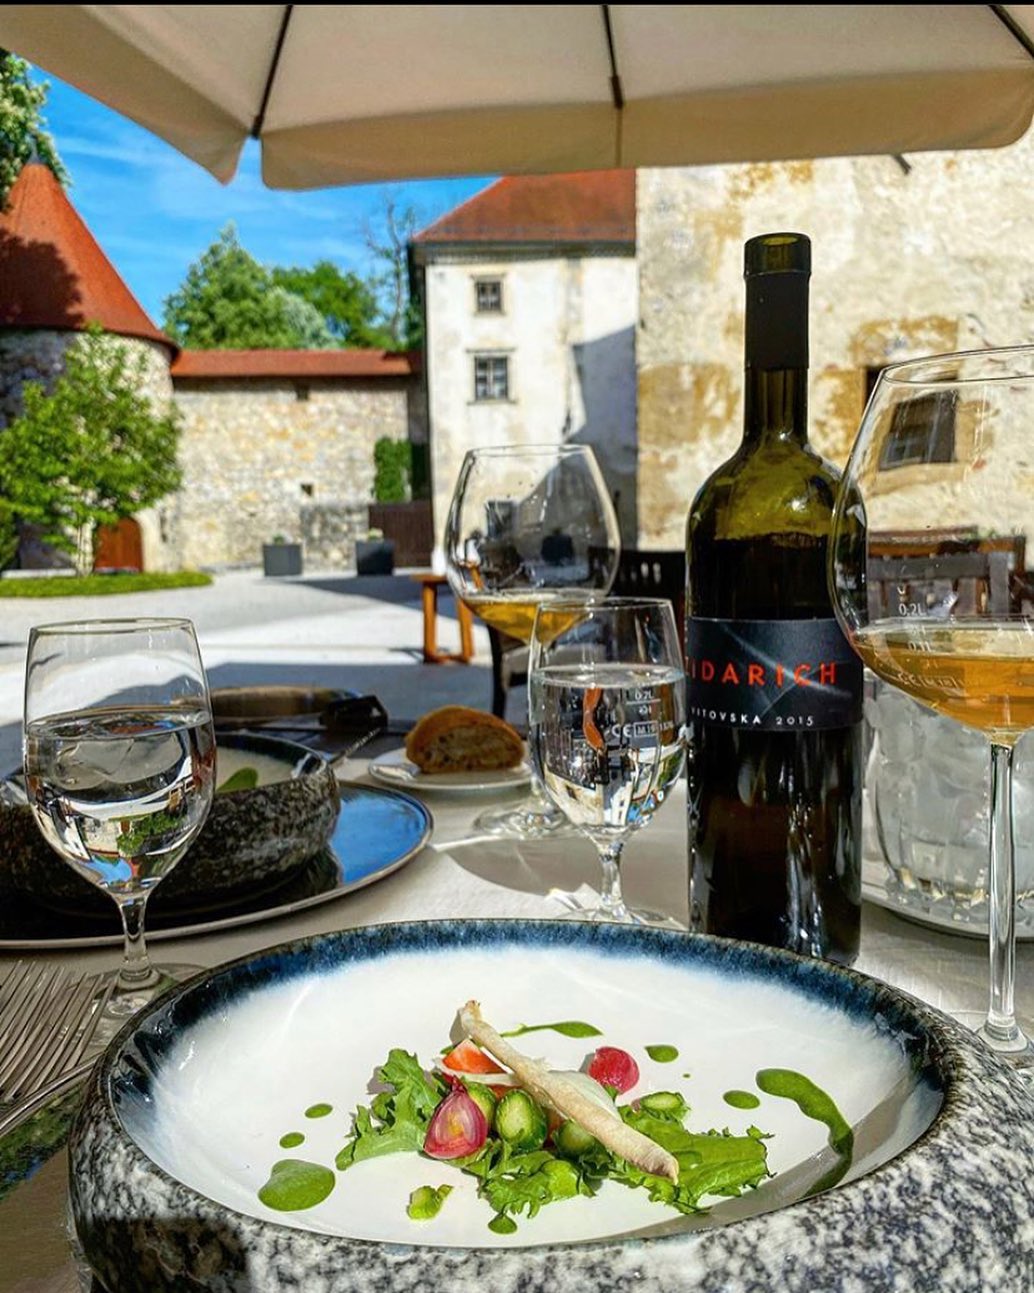 Grad Otočec, el castillo medieval hotel y restaurante en Eslovenia